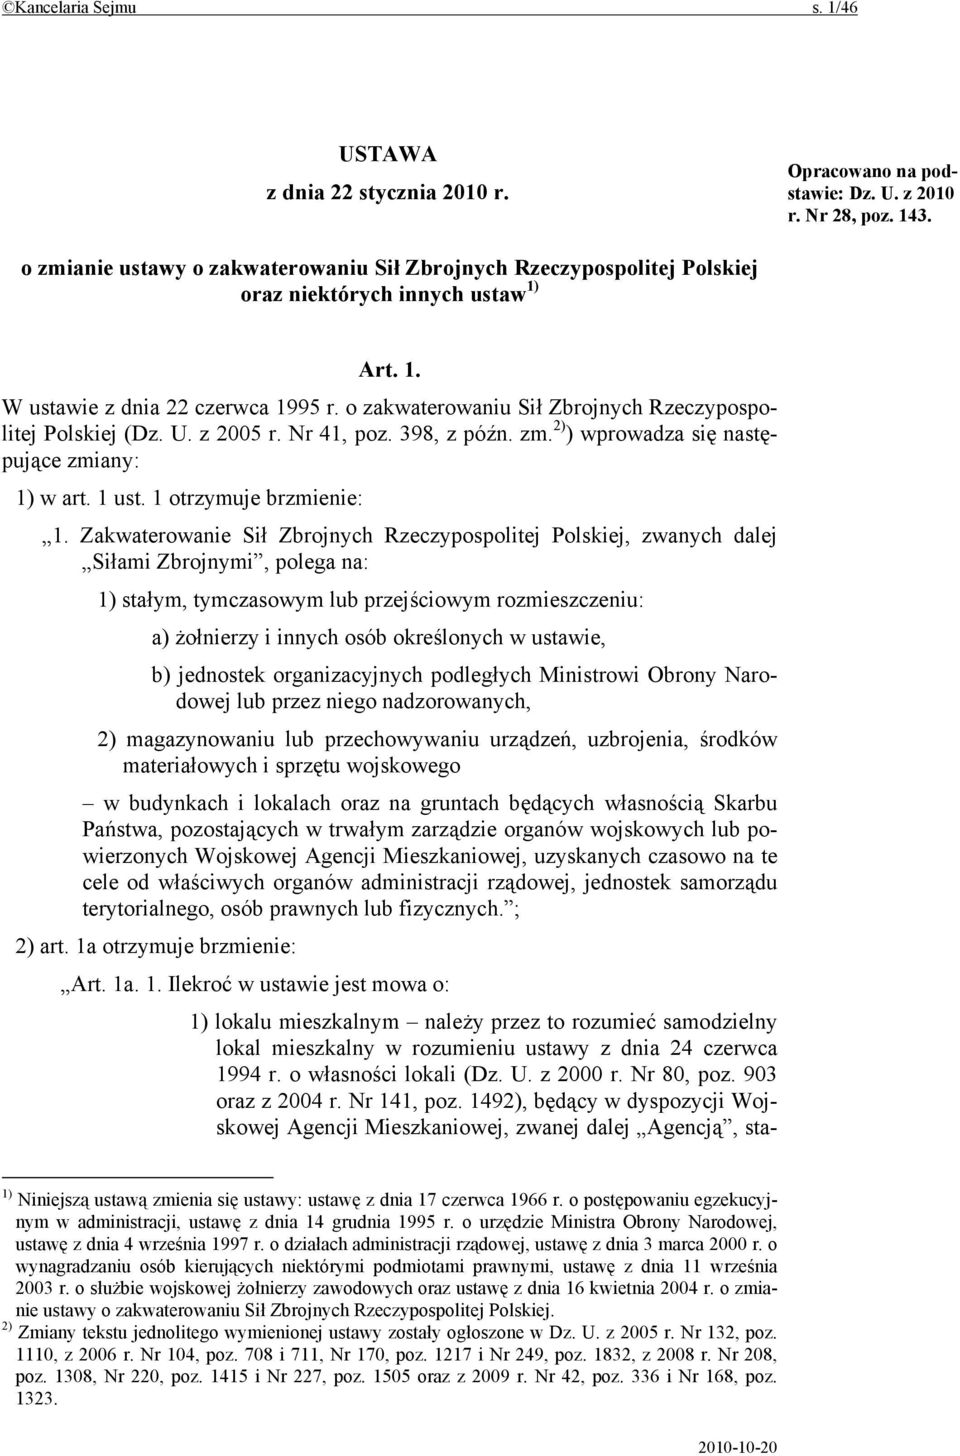 o zakwaterowaniu Sił Zbrojnych Rzeczypospolitej Polskiej (Dz. U. z 2005 r. Nr 41, poz. 398, z późn. zm. 2) ) wprowadza się następujące zmiany: 1) w art. 1 ust. 1 otrzymuje brzmienie: 1.